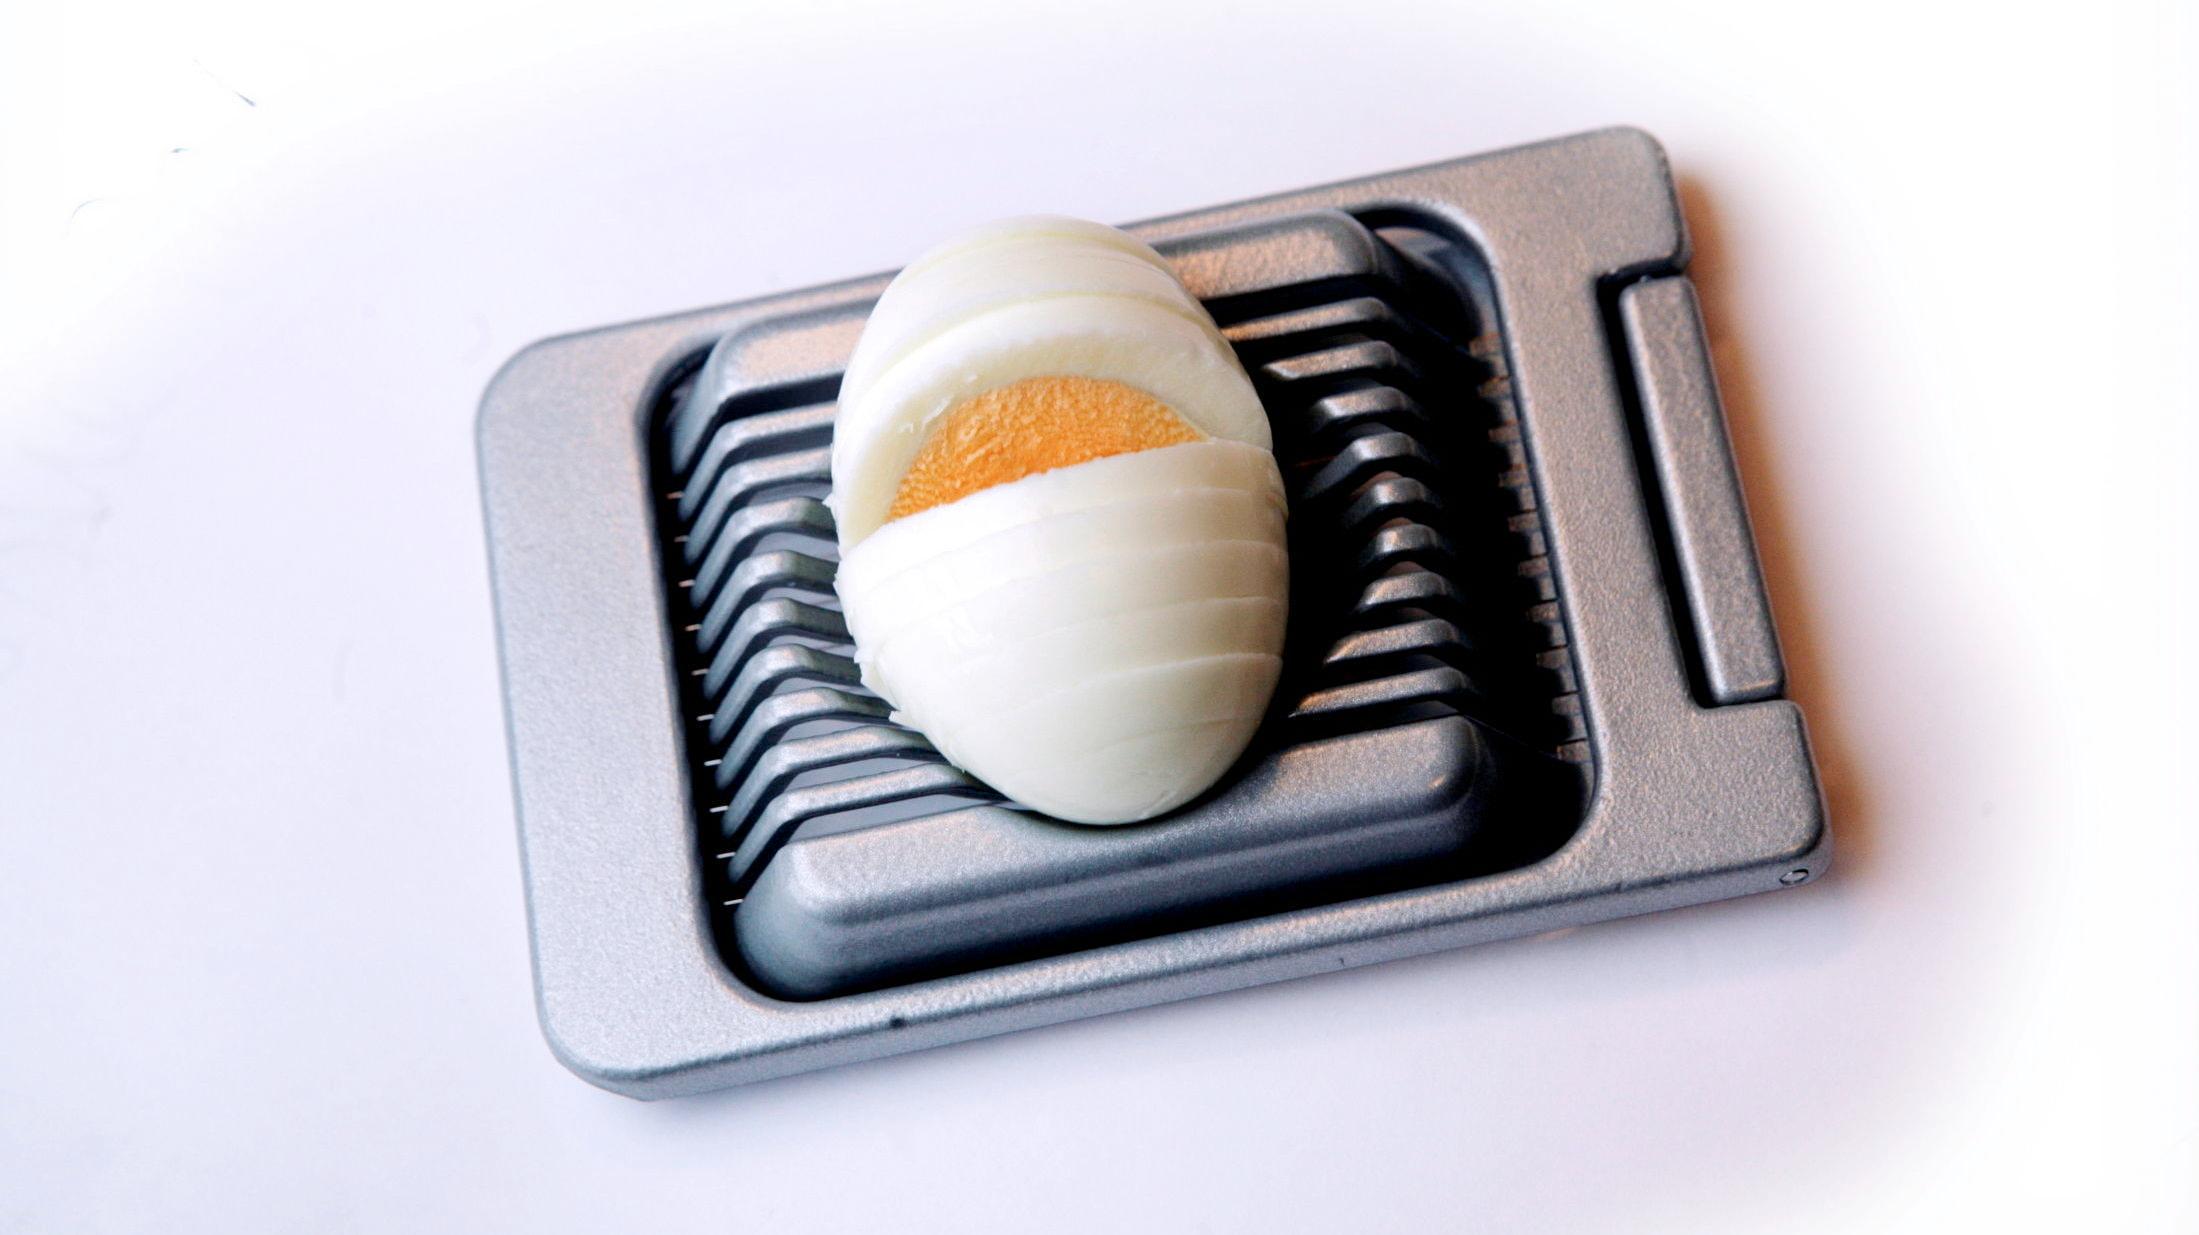 NYTTIG: Denne kan brukes til mer enn å dele egg. Sjekk flere smarte tips og triks under. Foto: Annemor Larsen/VG